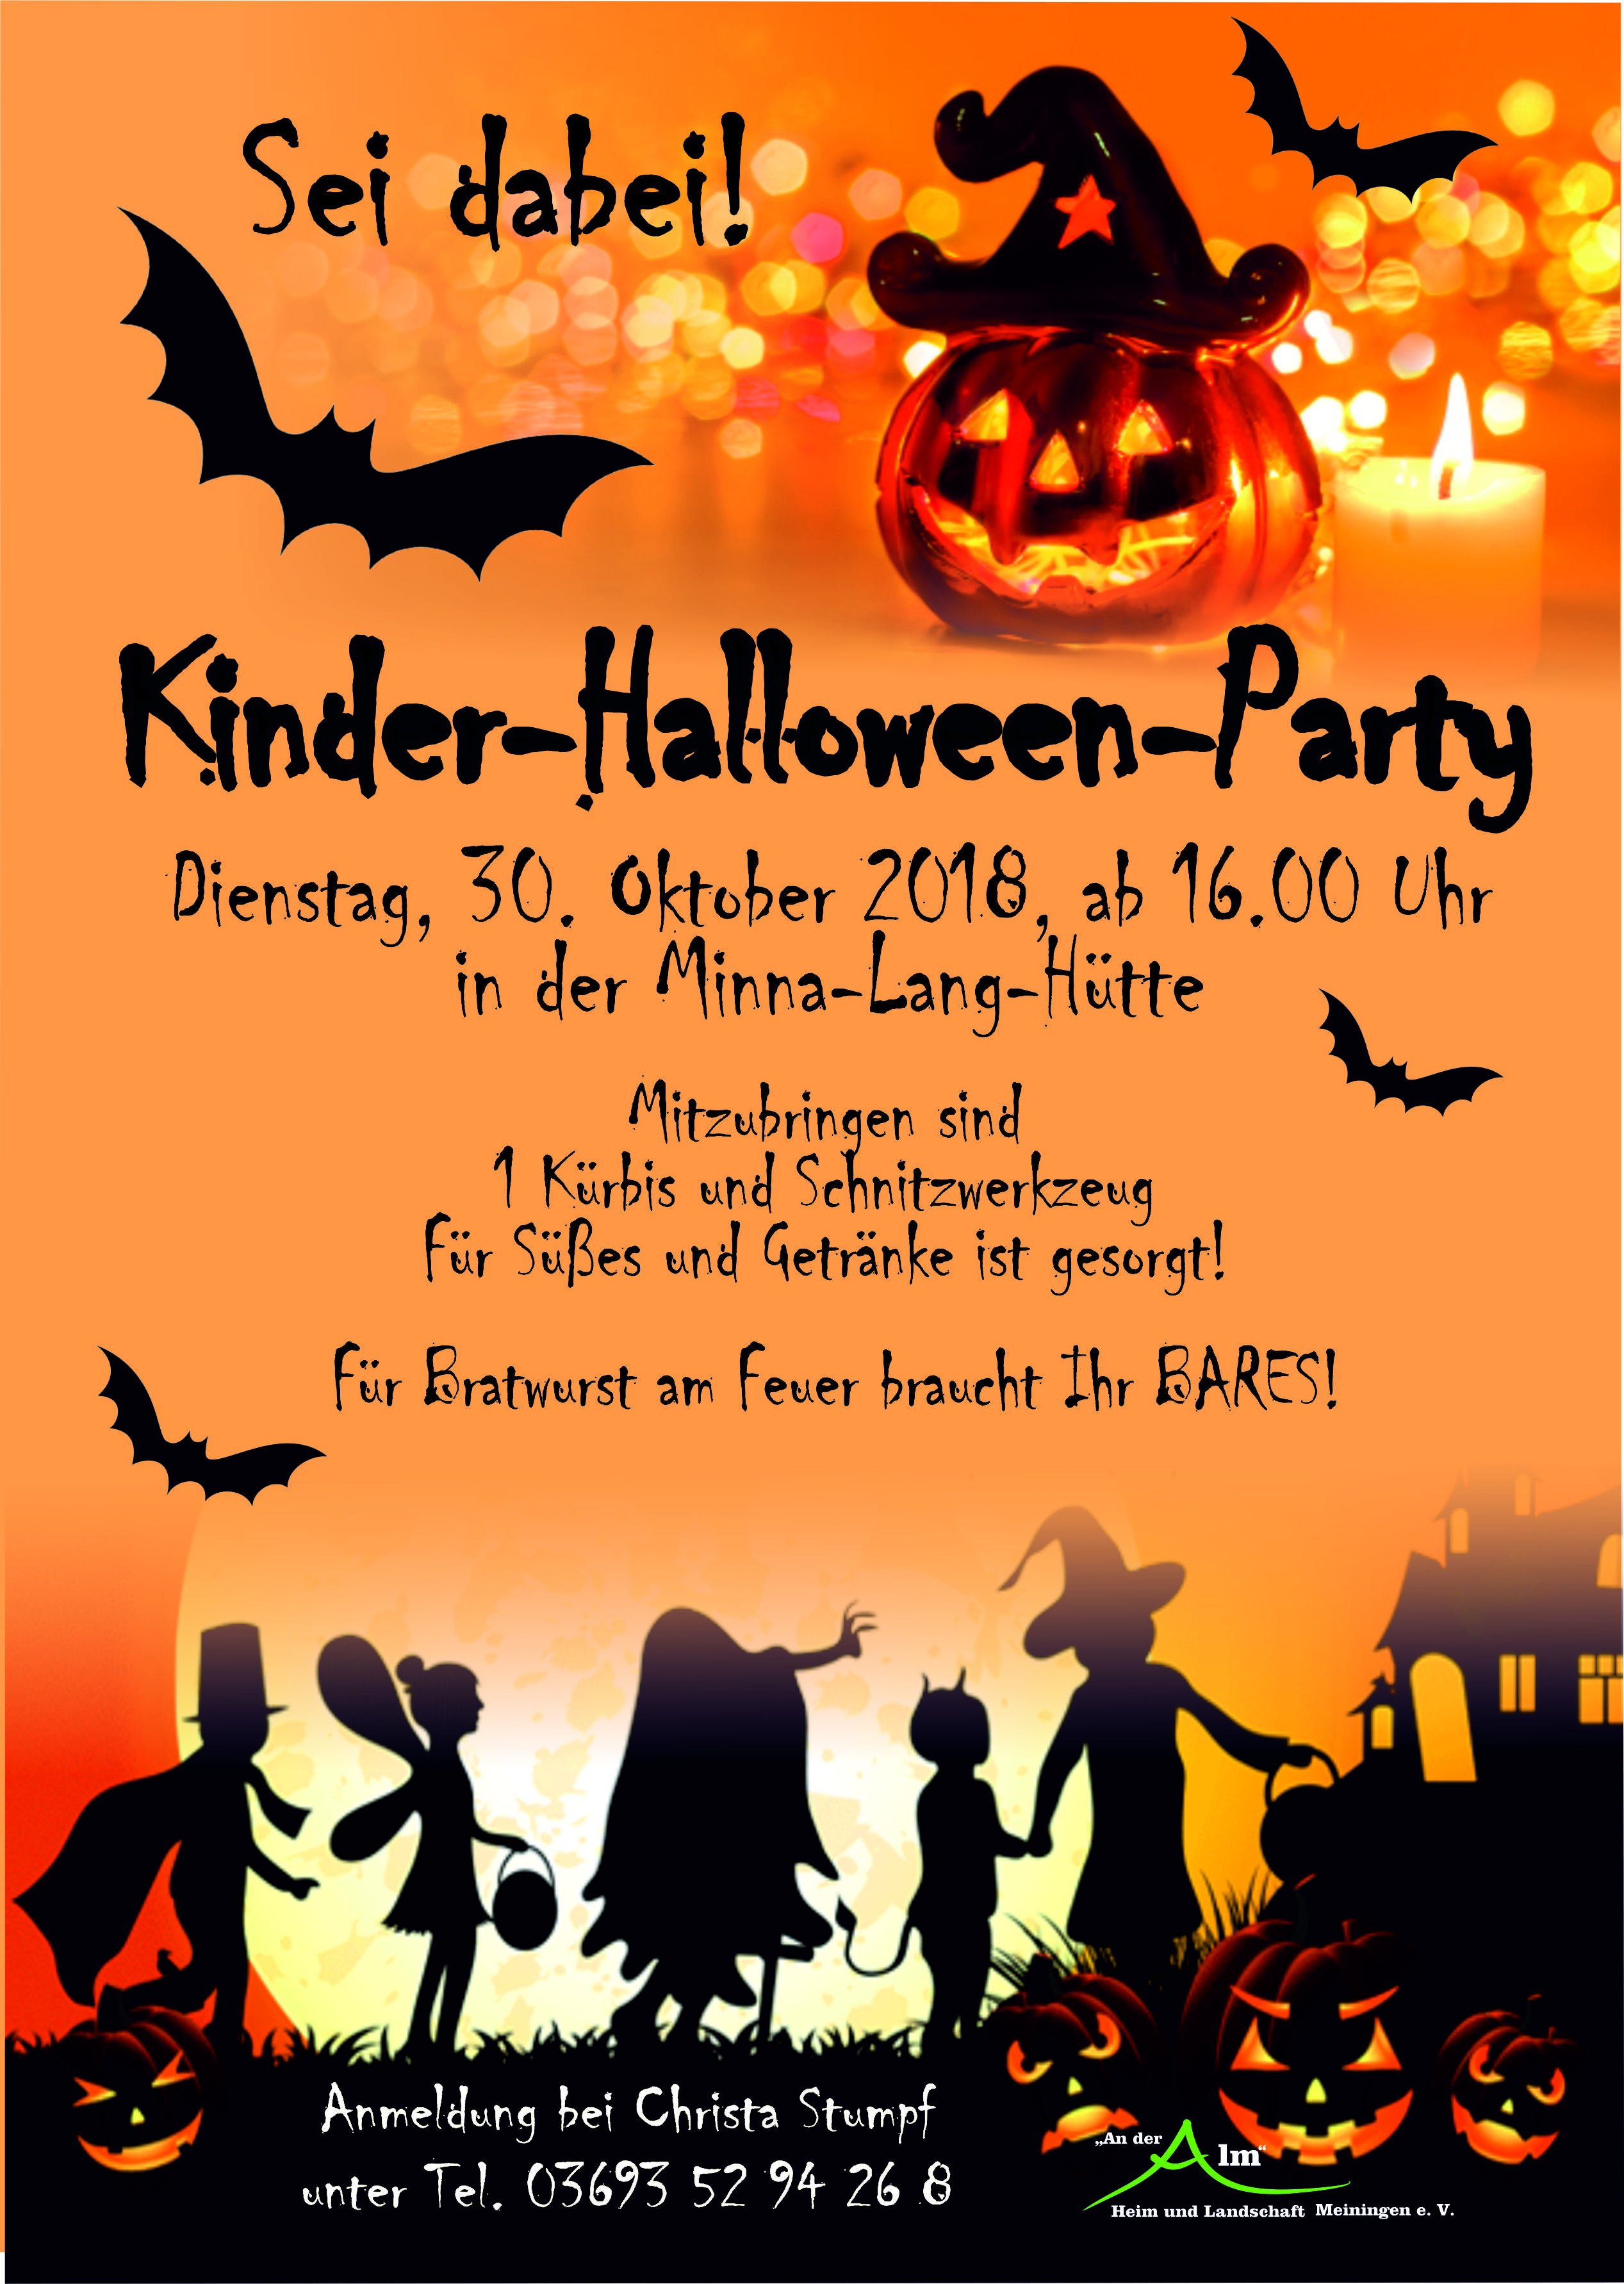 Halloween Party In Der Minna Lang Hutte Heim Und Landschaft An Der Alm Meiningen E V